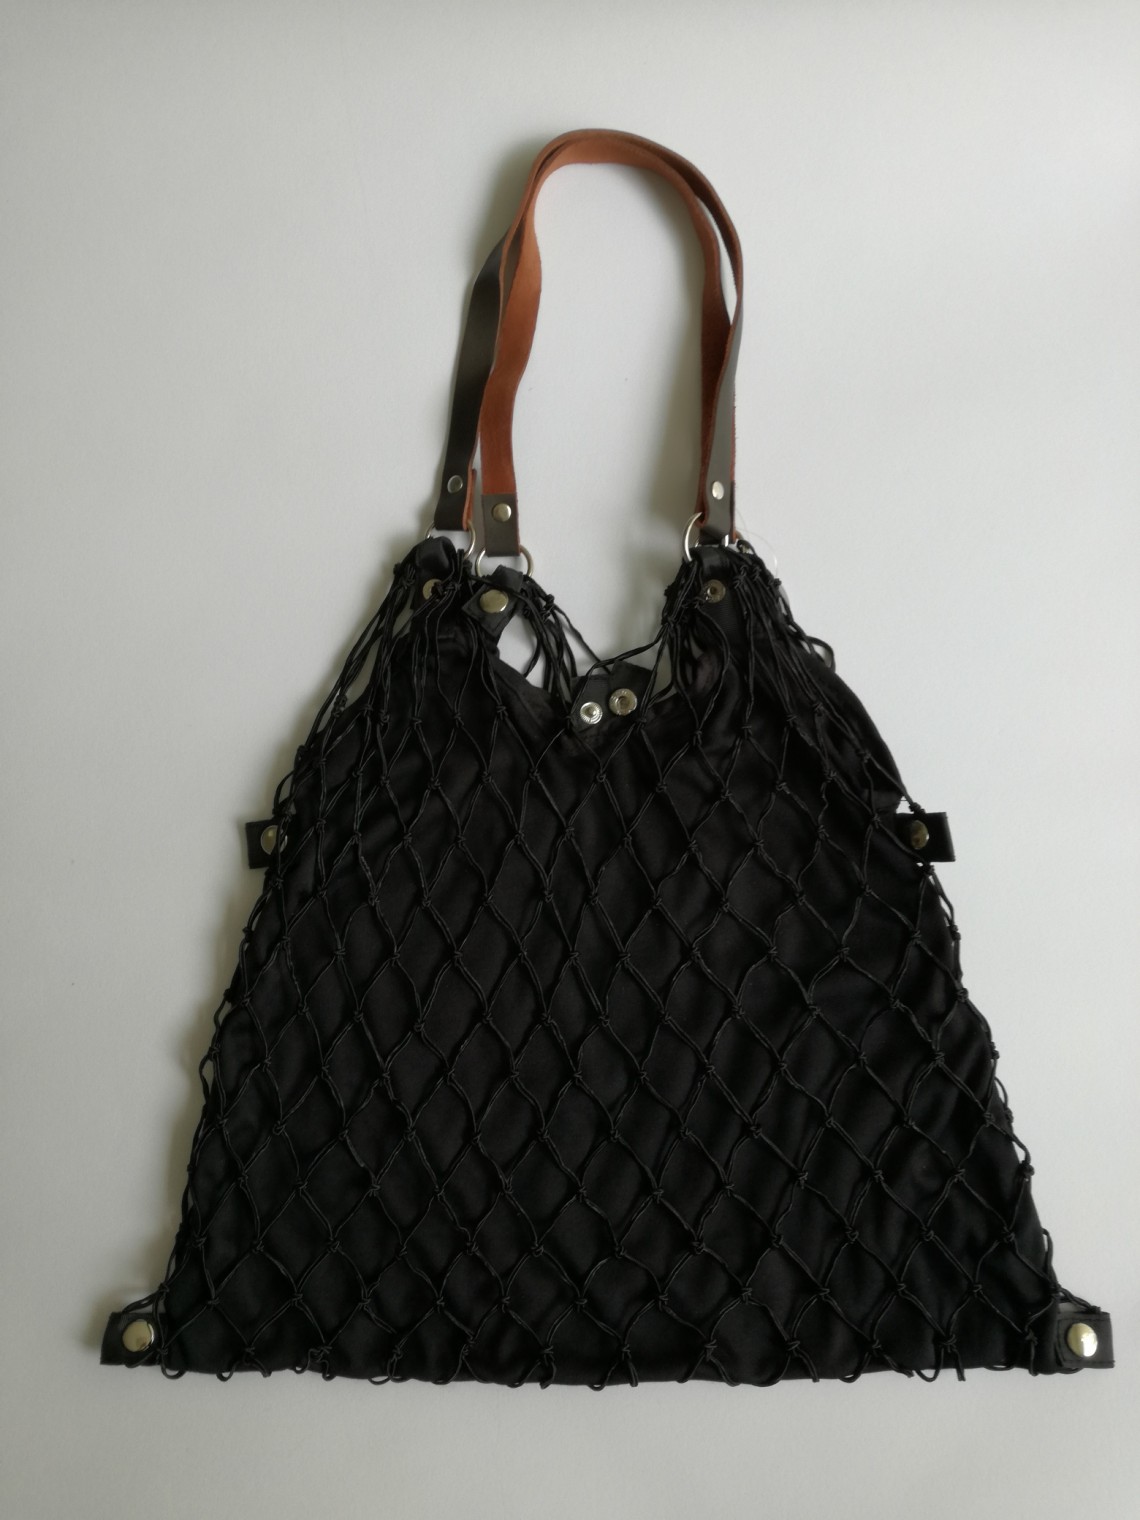 Tinklinis krepšys su įsegamu ir išsegamu tampriu audiniu juodos spalvos - 2011855 de luxe schwarz. Kaina 19,90 €.